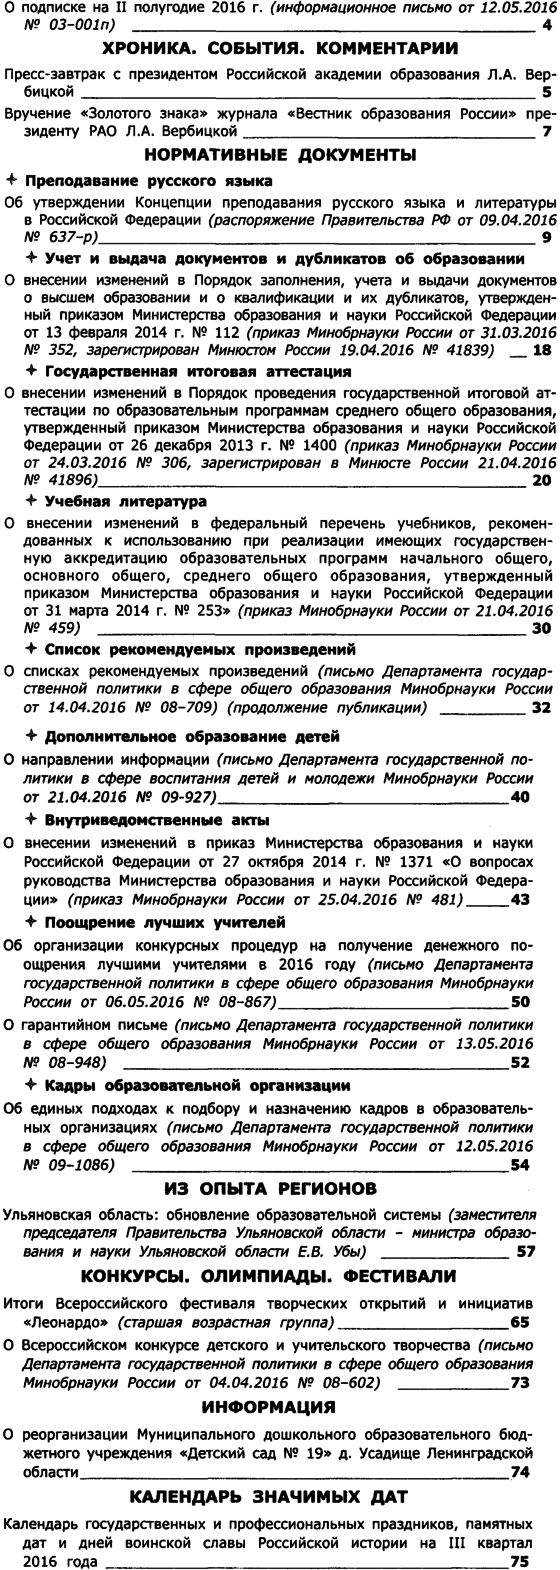 Вестник образования России 2016-11.png